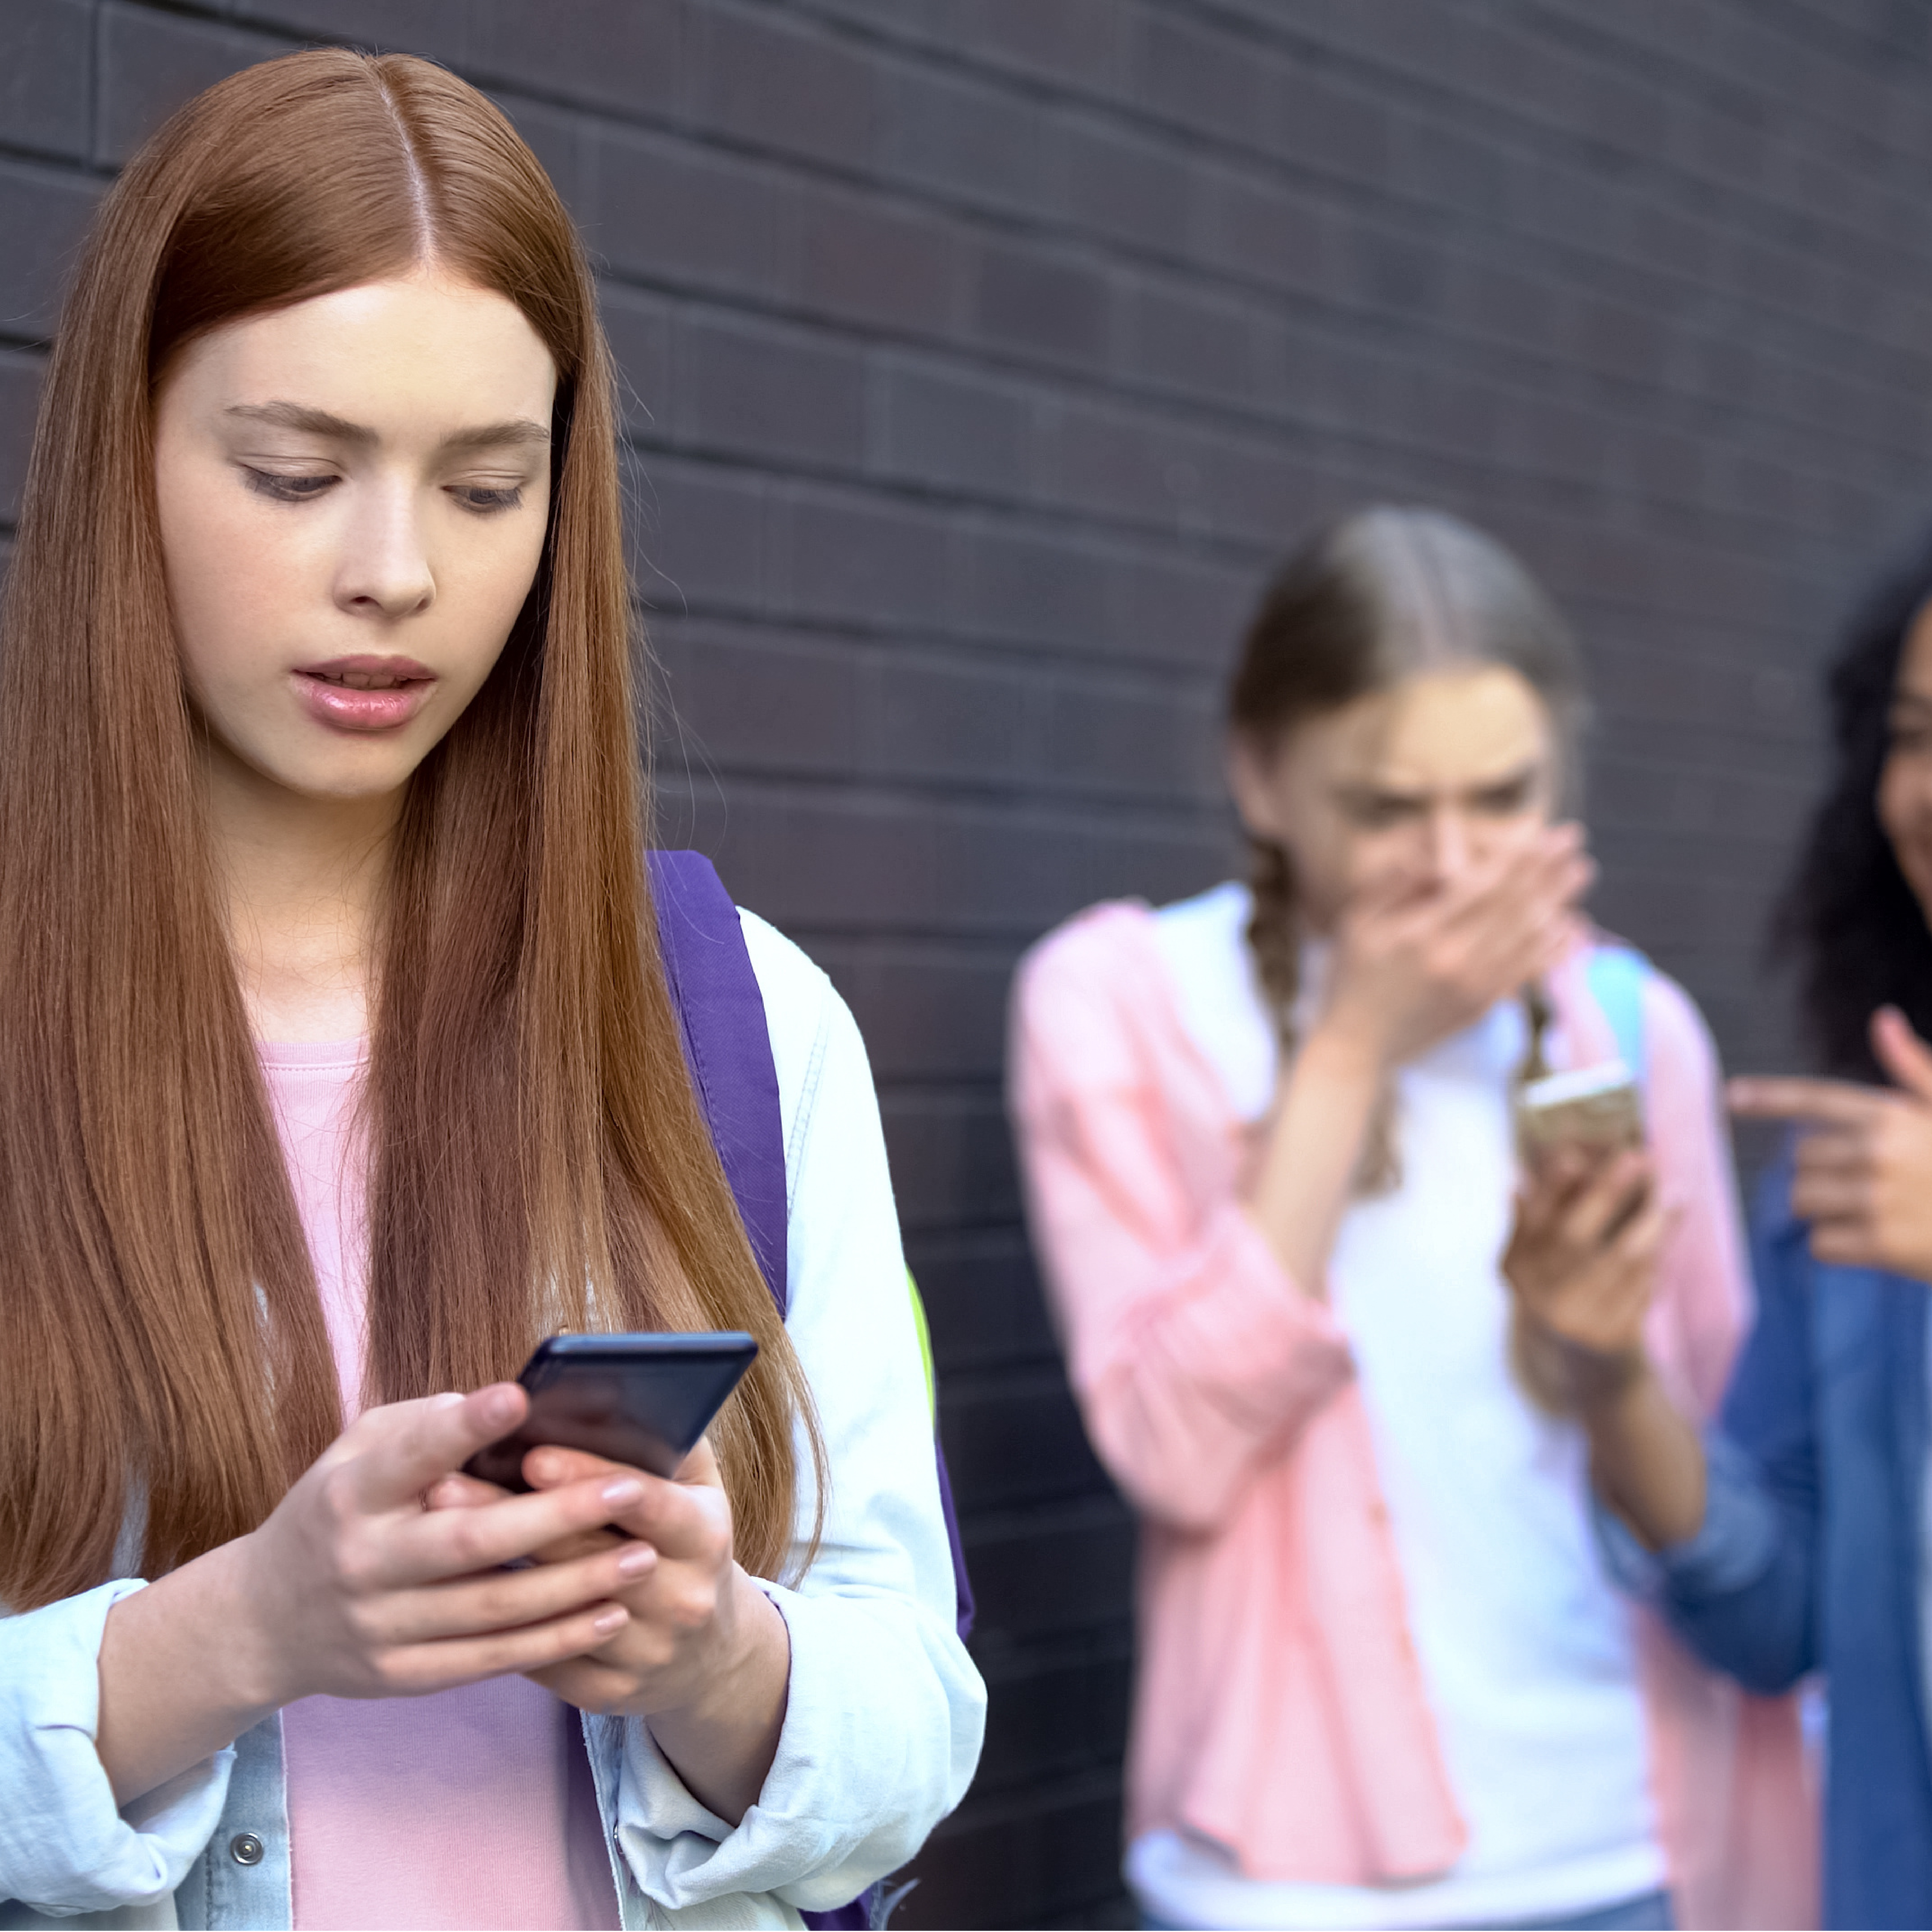 Mädchen sieht verunsichert auf Smartphone